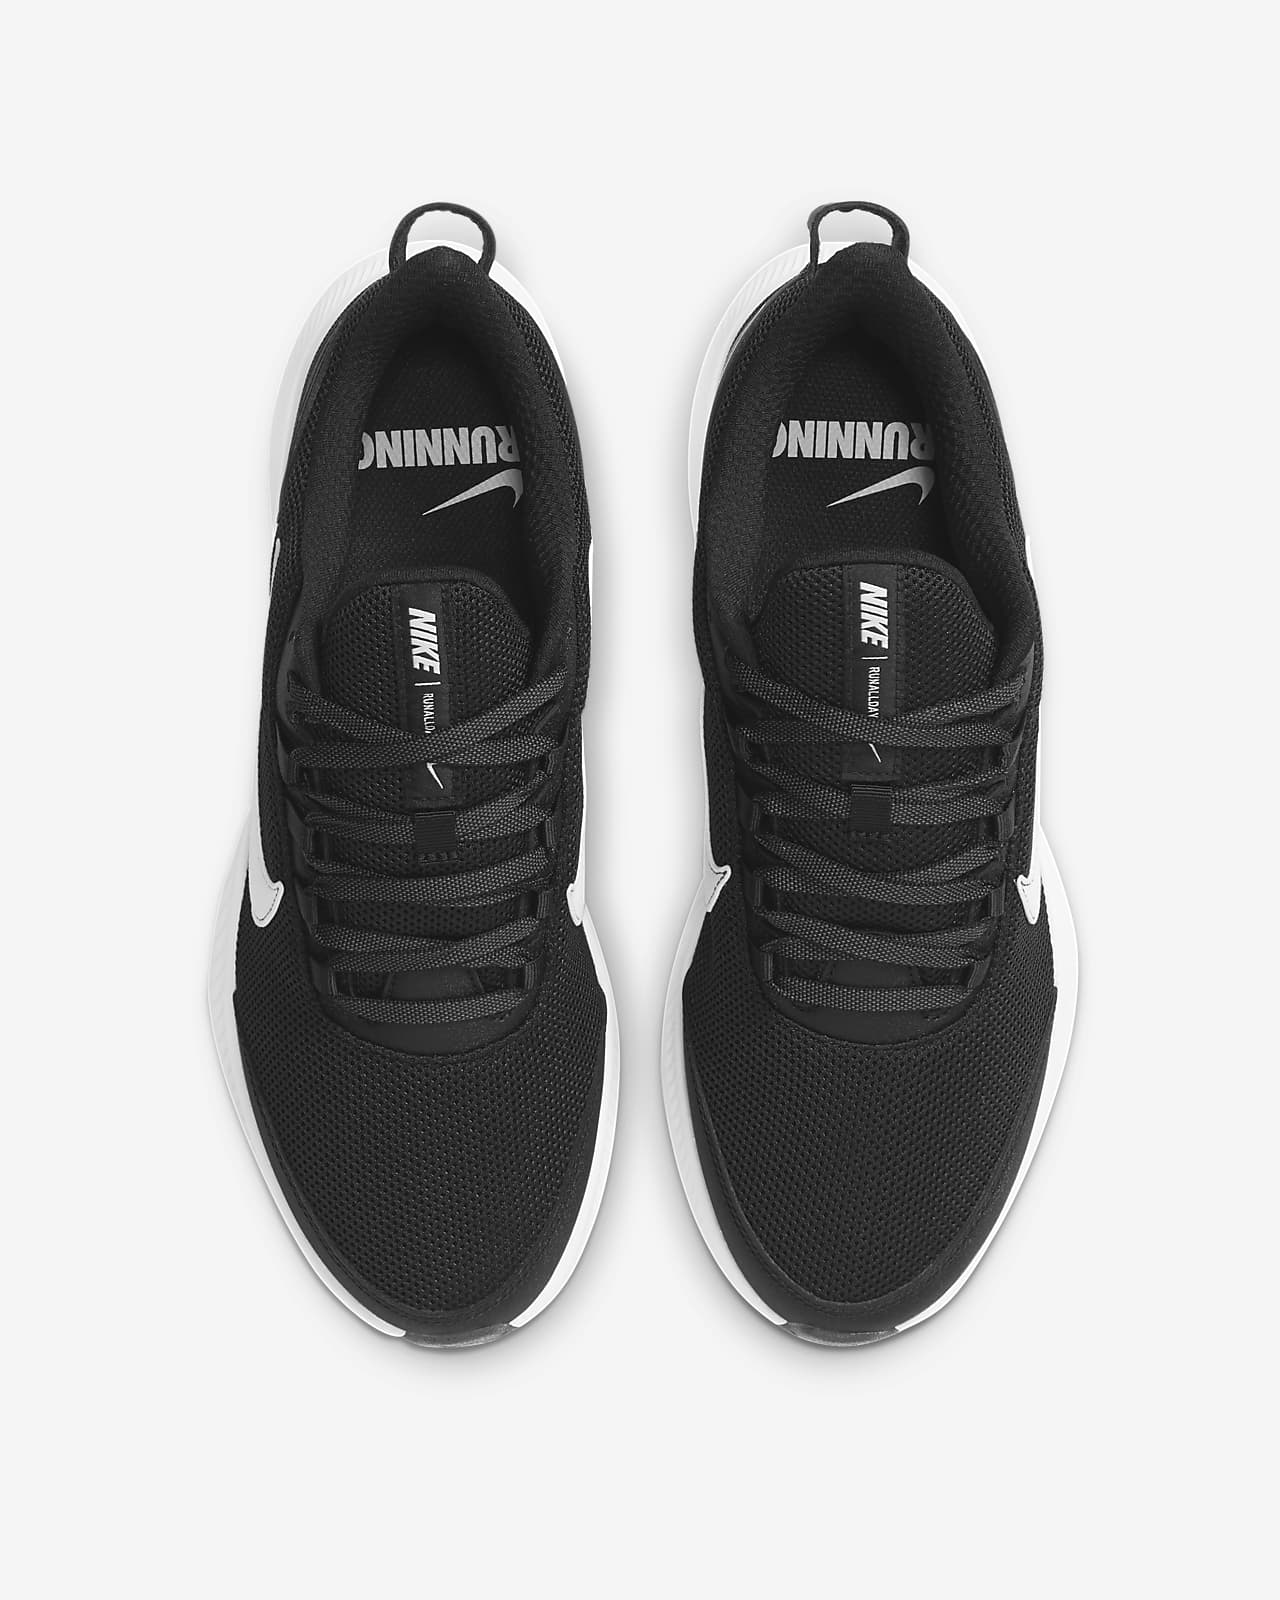 all black nike running sneakers